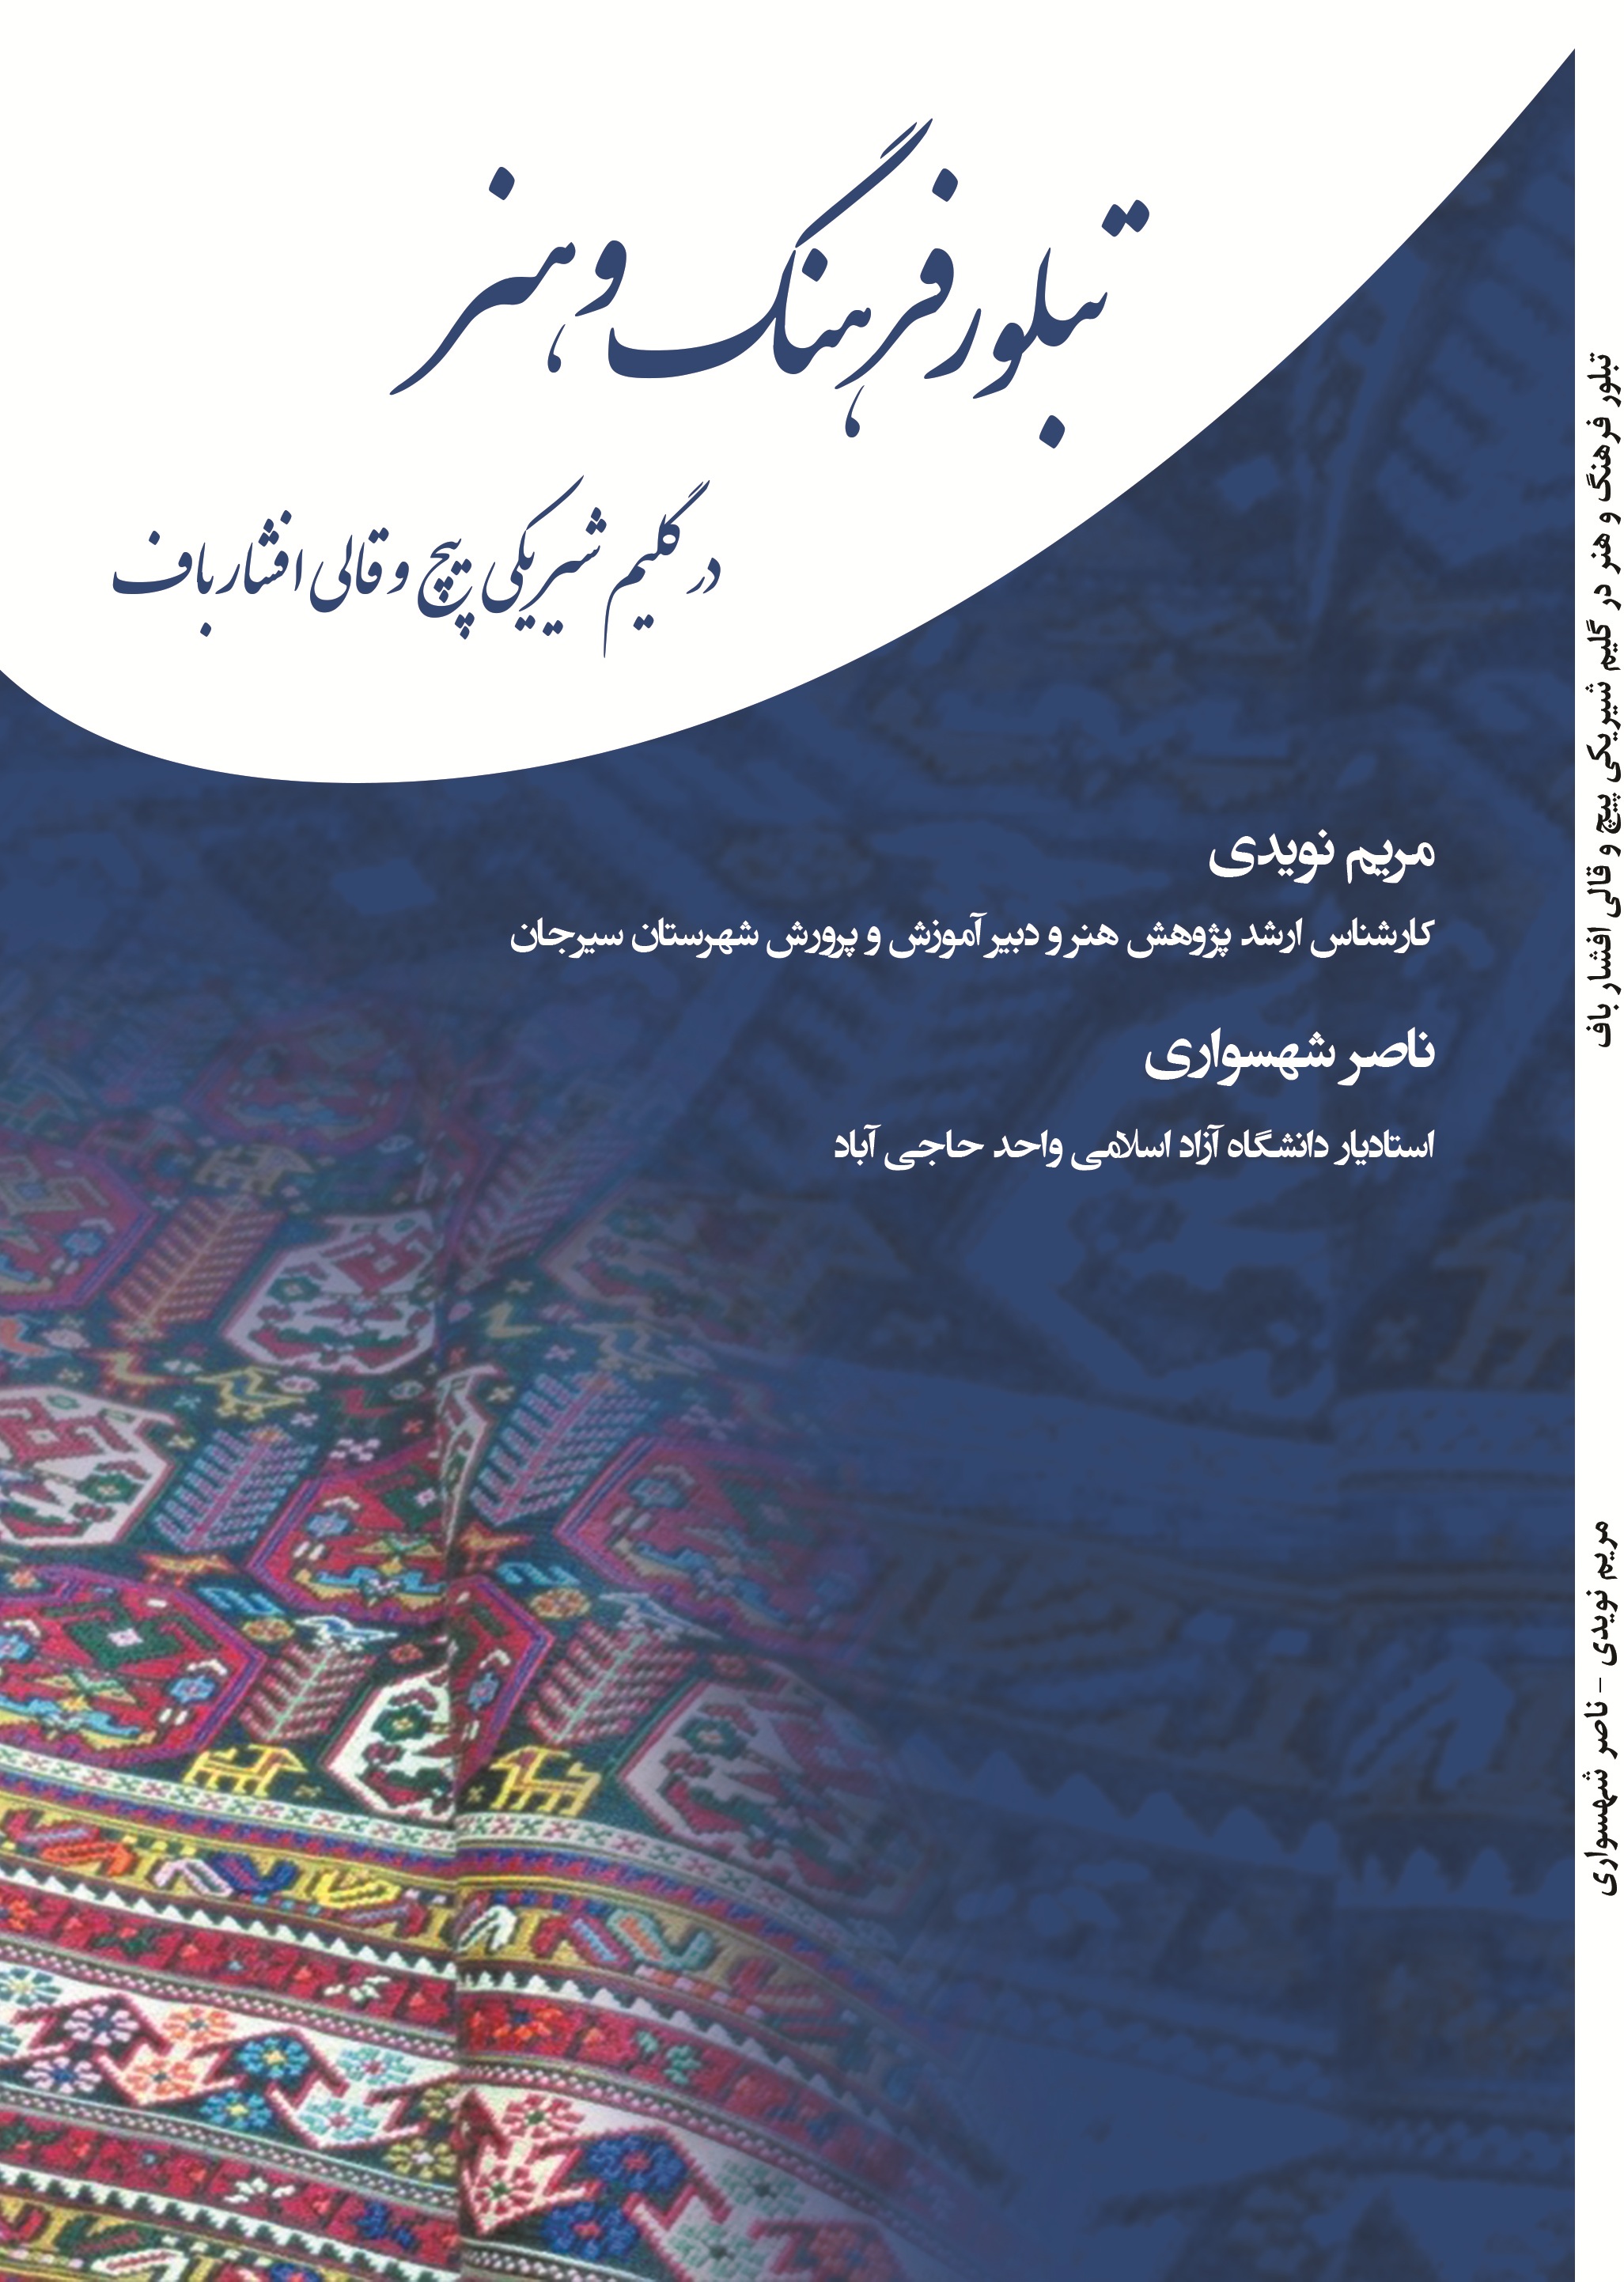 تبلور فرهنگ و هنر در گلیم شیریکی پیچ و قالی افشار باف